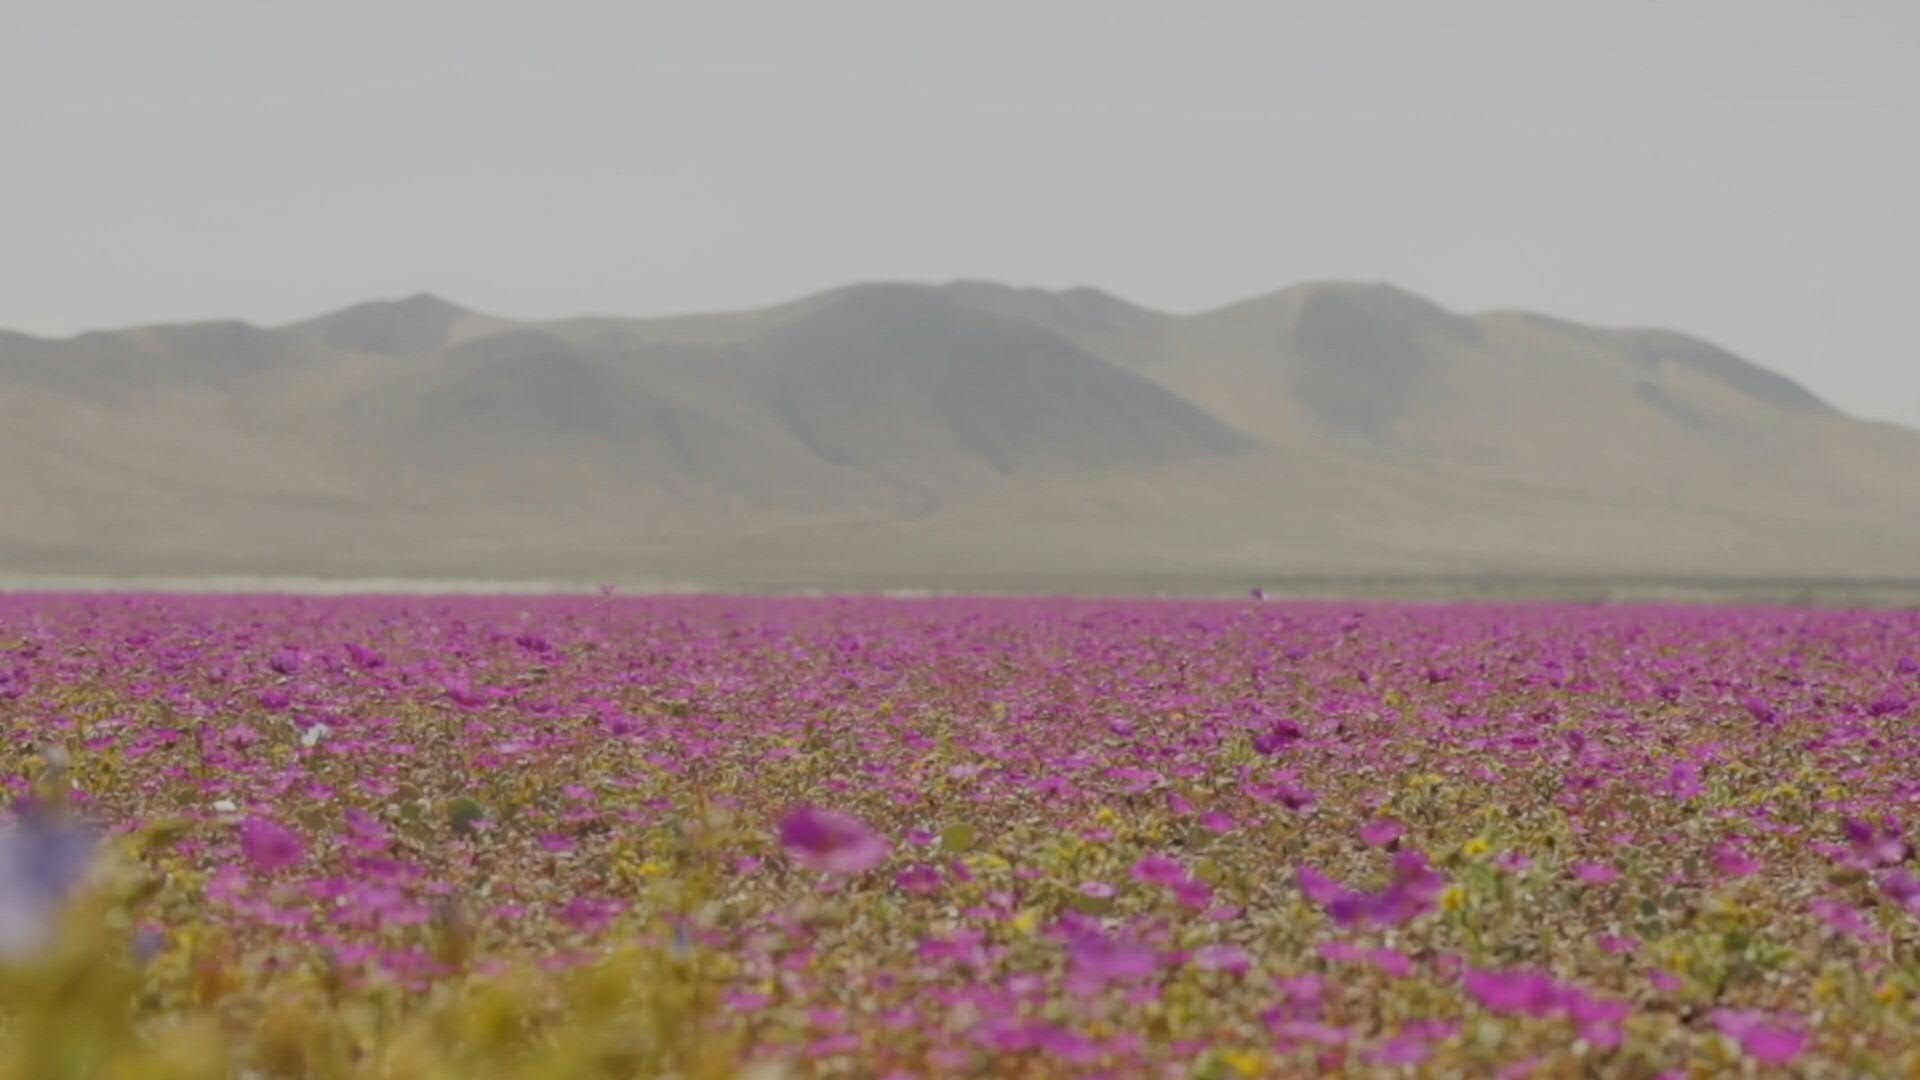 Recientemente, el gobierno de Chile anunció la creación de un parque nacional en la zona sur del desierto de Atacama, el más árido del mundo, para proteger el fenómeno de floración que ocurre excepcionalmente en esta zona de la región de Copiapó, a 500 km al norte de Santiago (AFP)